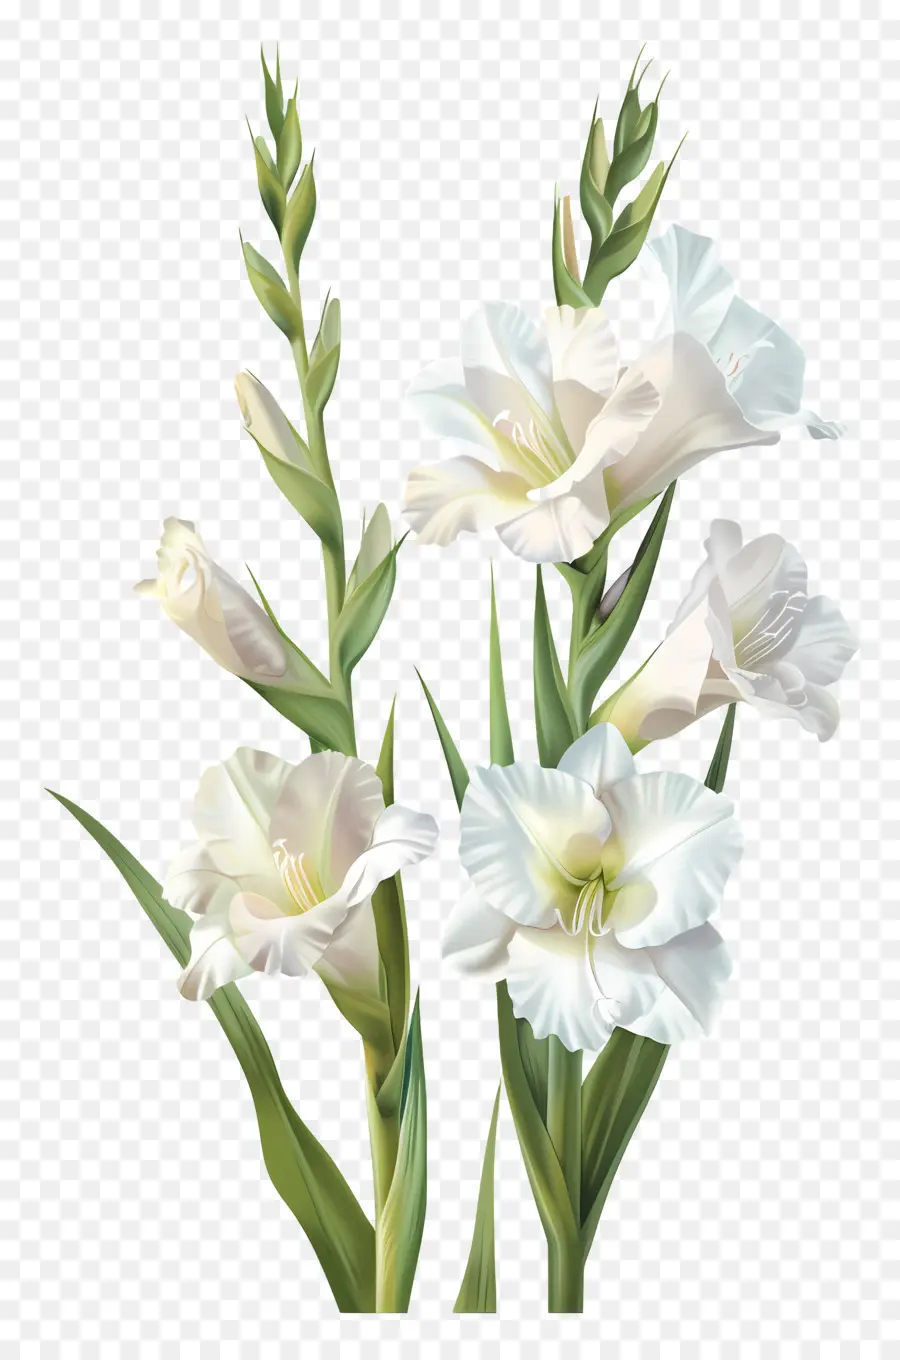 fiore bianco - Grande fiore bianco con petali arricciati